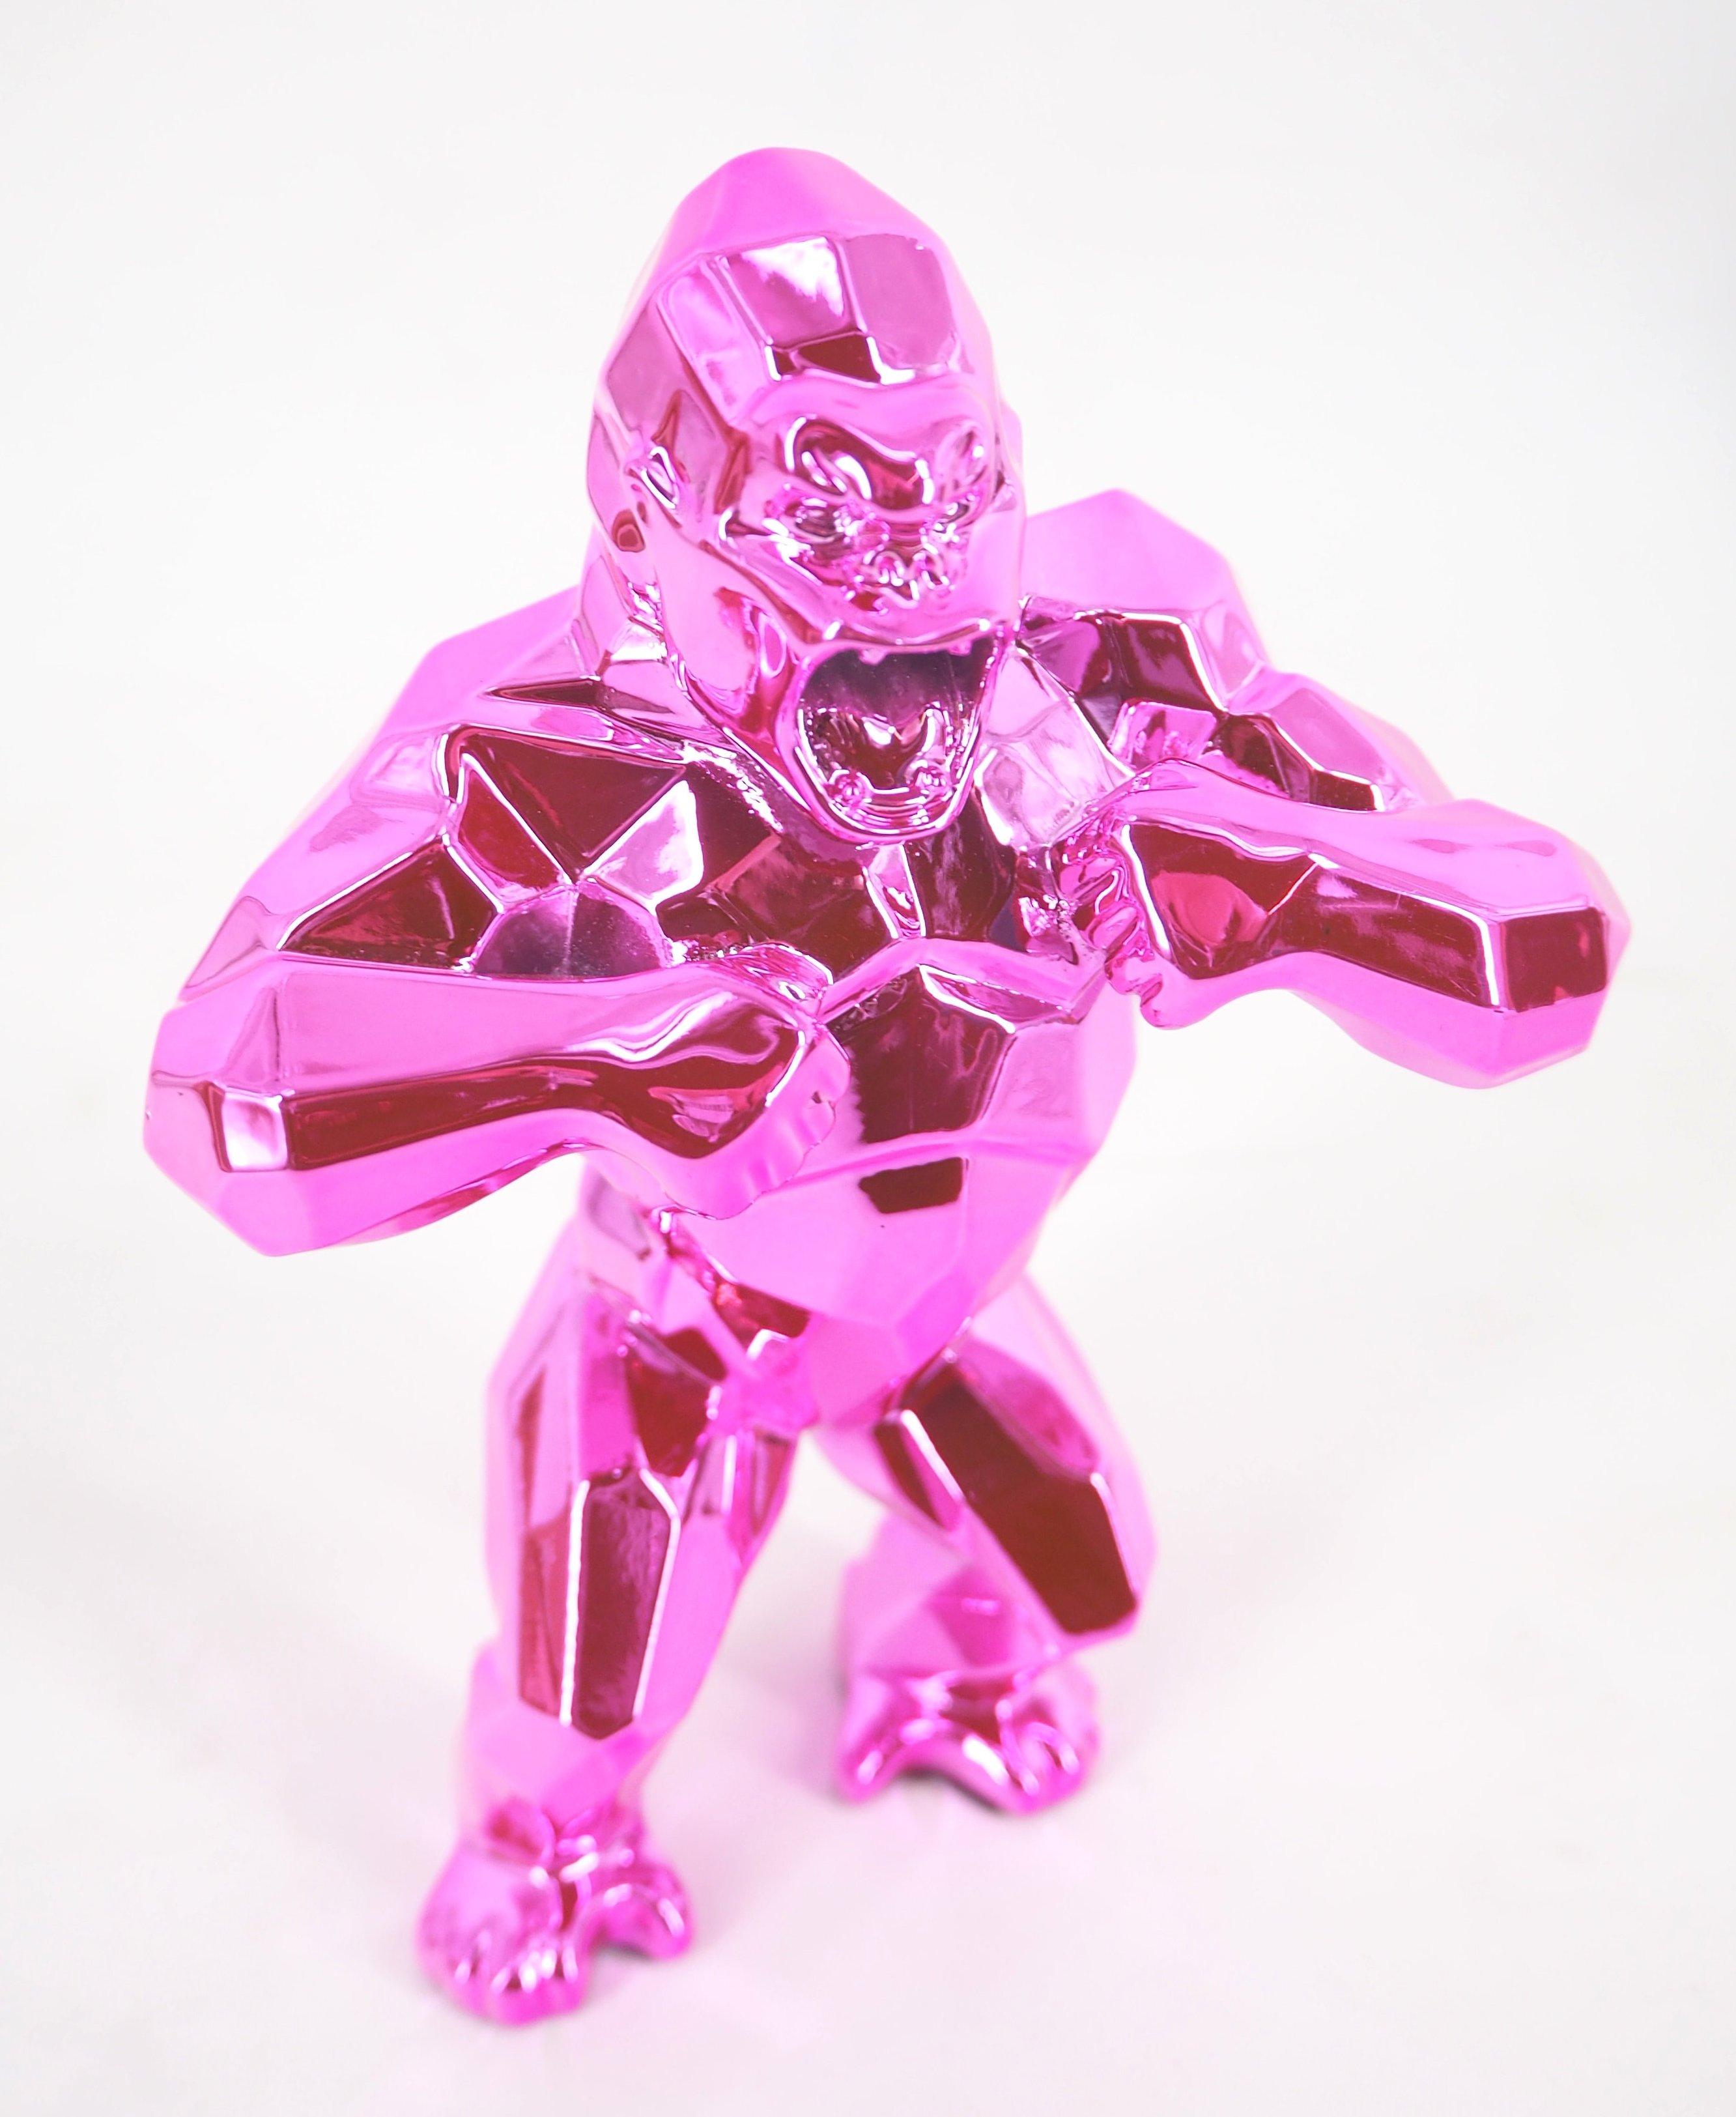 Richard Orlinski Figurative Sculpture - Kong Spirit (Pink edition) - Sculpture